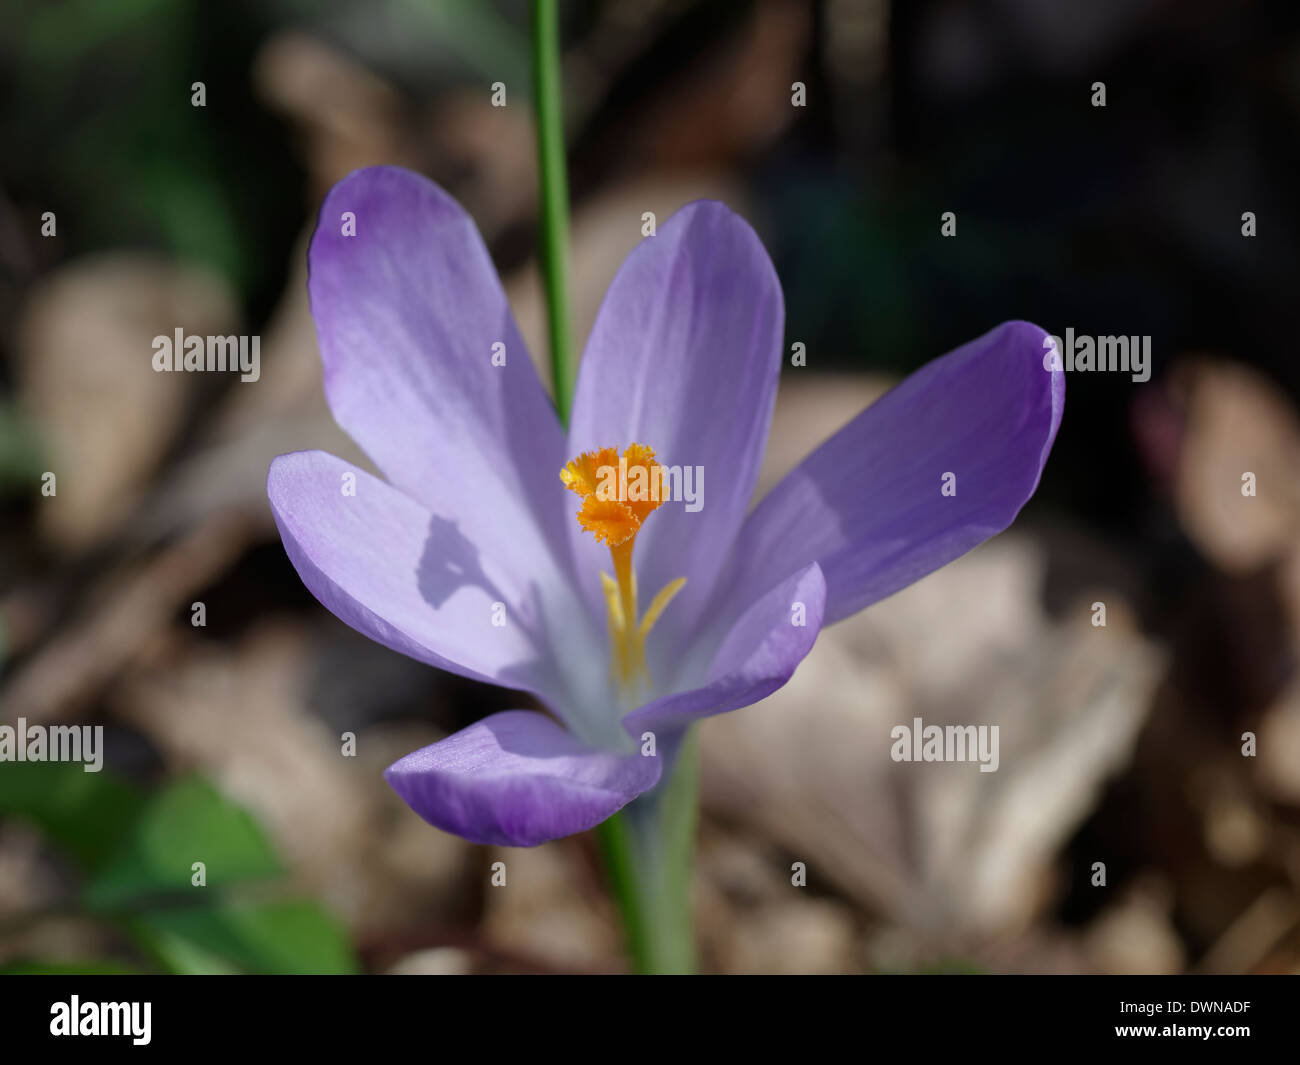 Saffron (Crocus sativus) flower Stock Photo